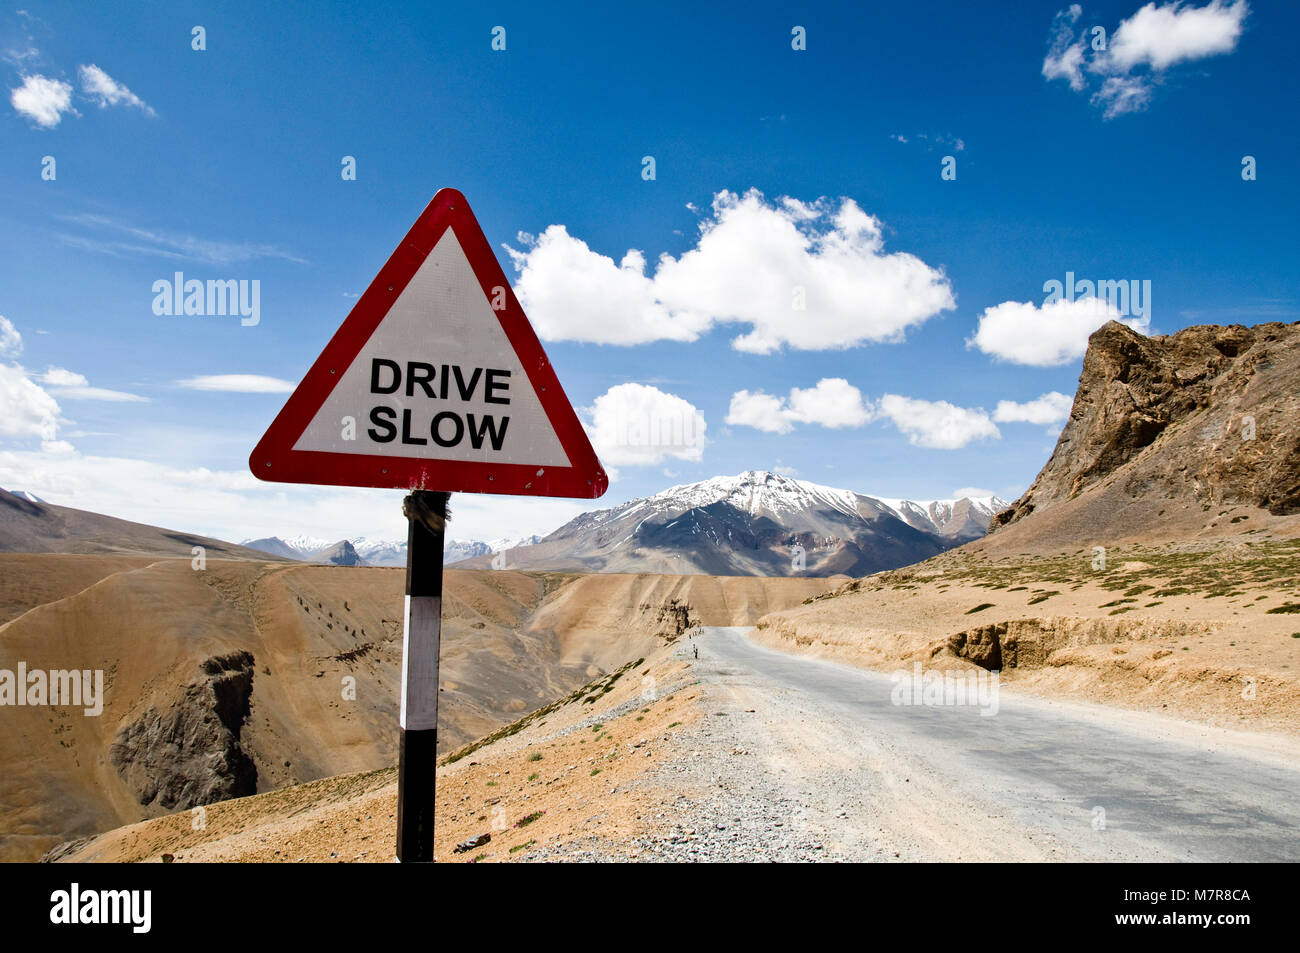 La route Leh-Manali, dur lent Signe, Ladakh, Himalaya, Inde Banque D'Images